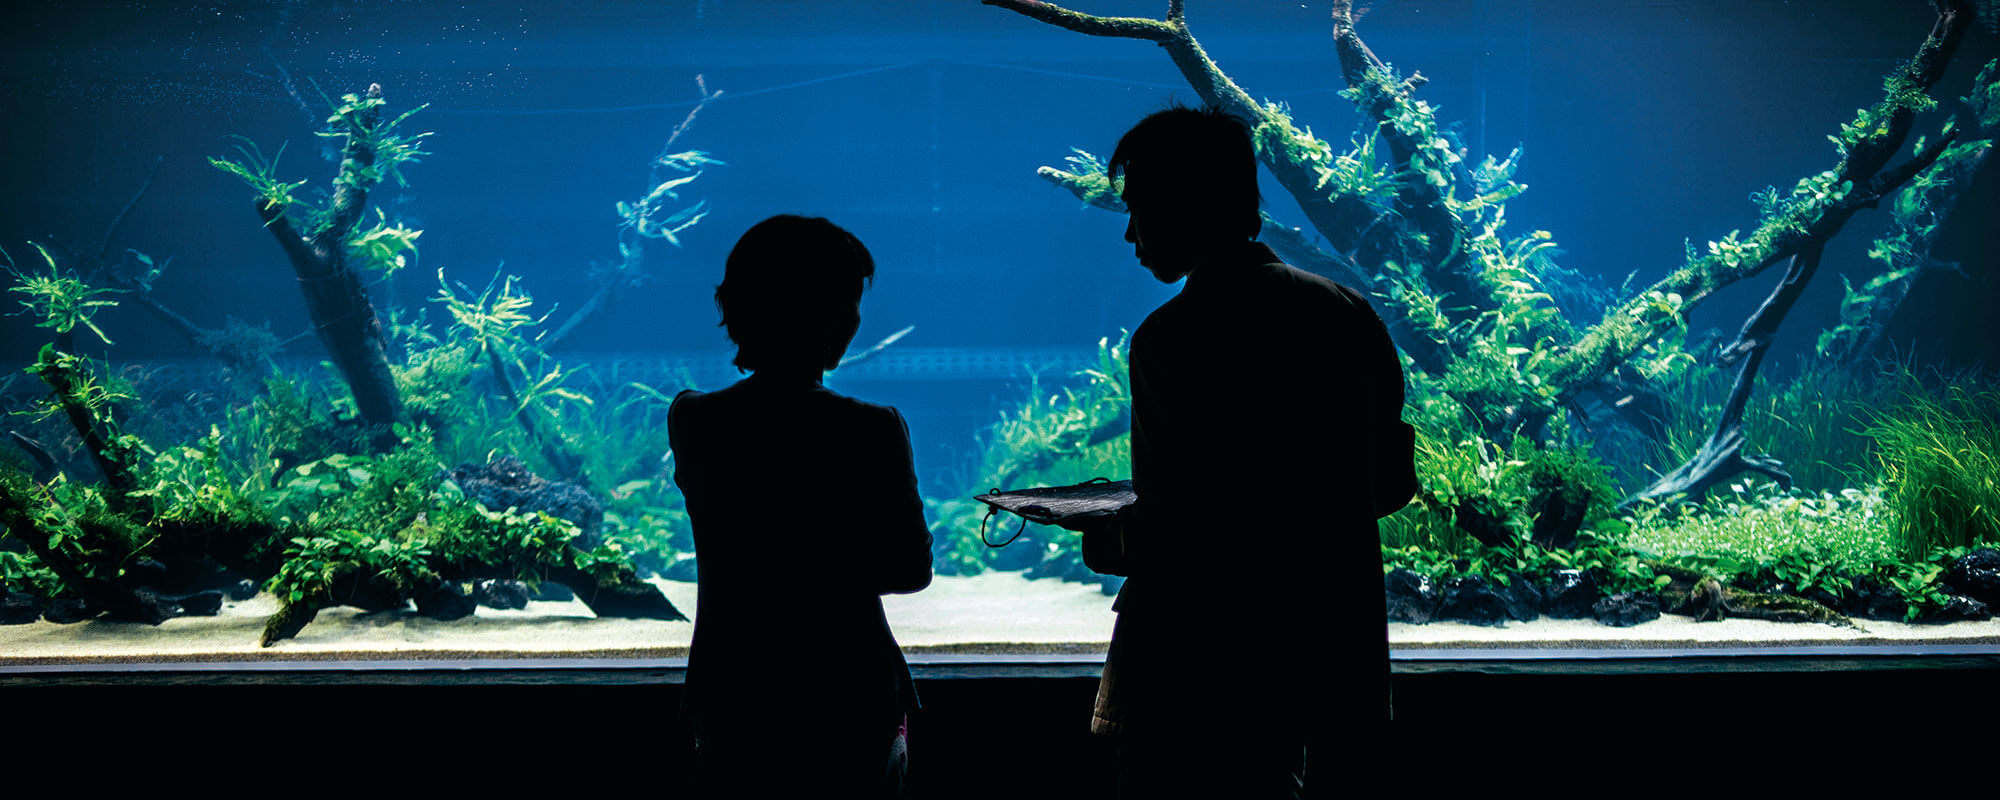 The World's Largest Nature Aquarium Project Takashi Amano x